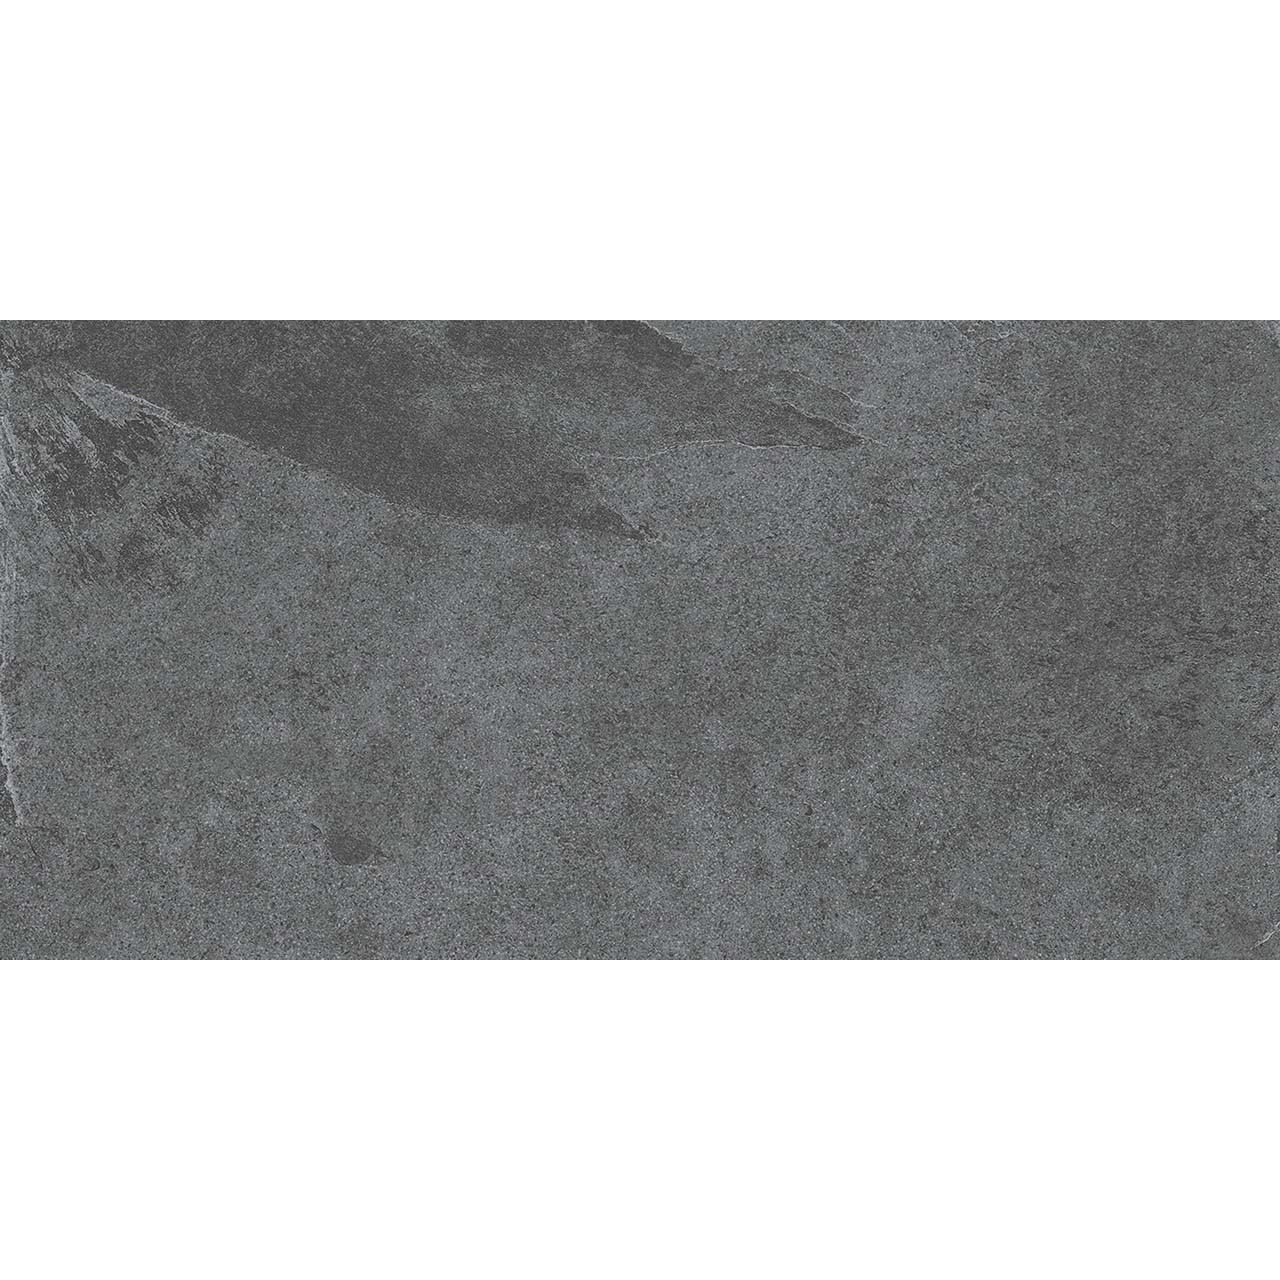 Плитка Estima Terra TE03 неполированный темно-серый 60x120 см плитка estima terra te03 неполированный темно серый 60x120 см